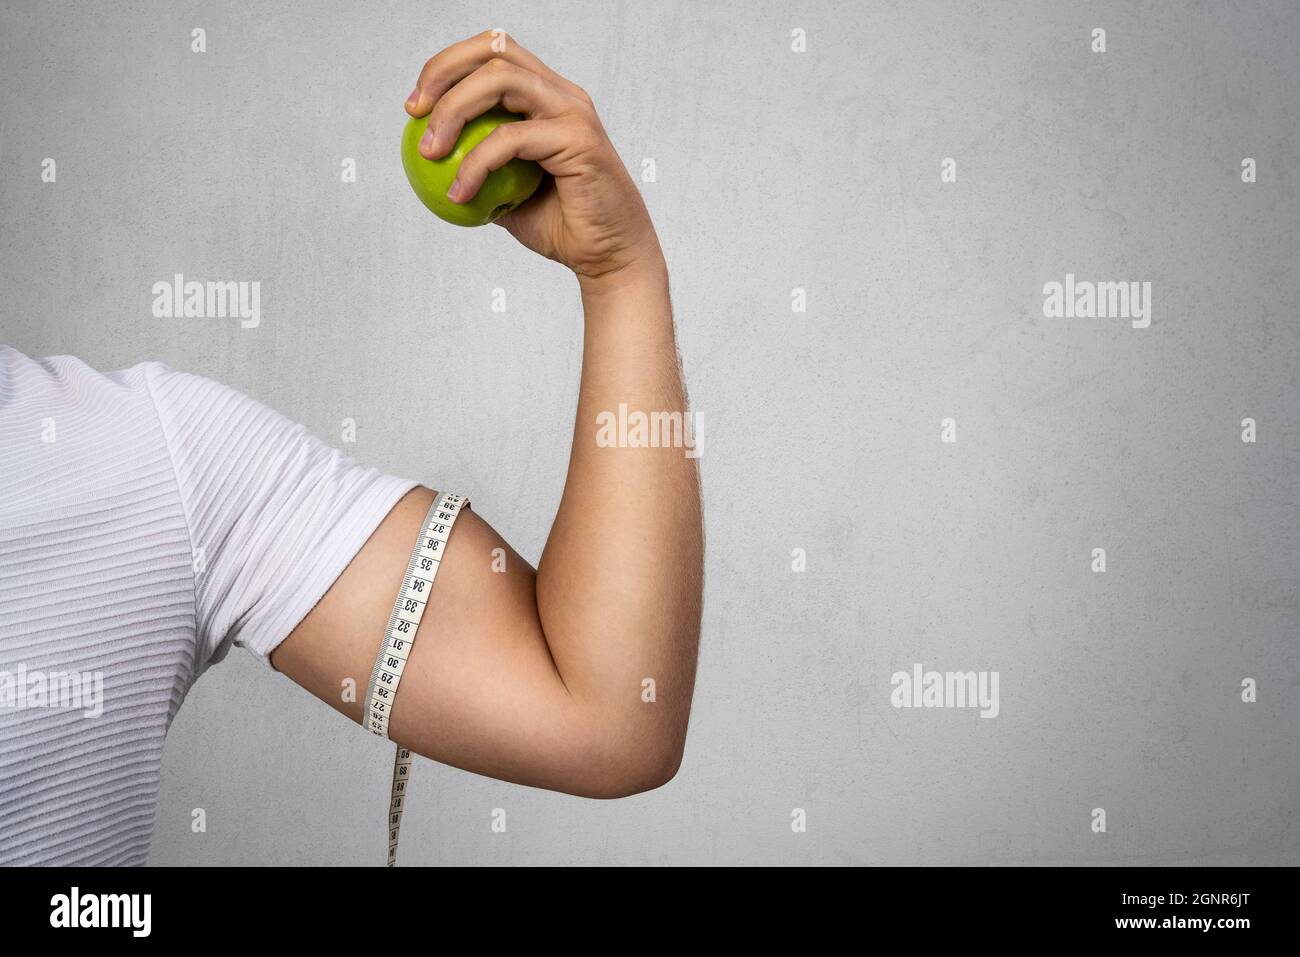 Giovane atletico che tiene una mela e mostra il suo bicipite. Sport e dieta per una vita sana. Foto di alta qualità Foto Stock